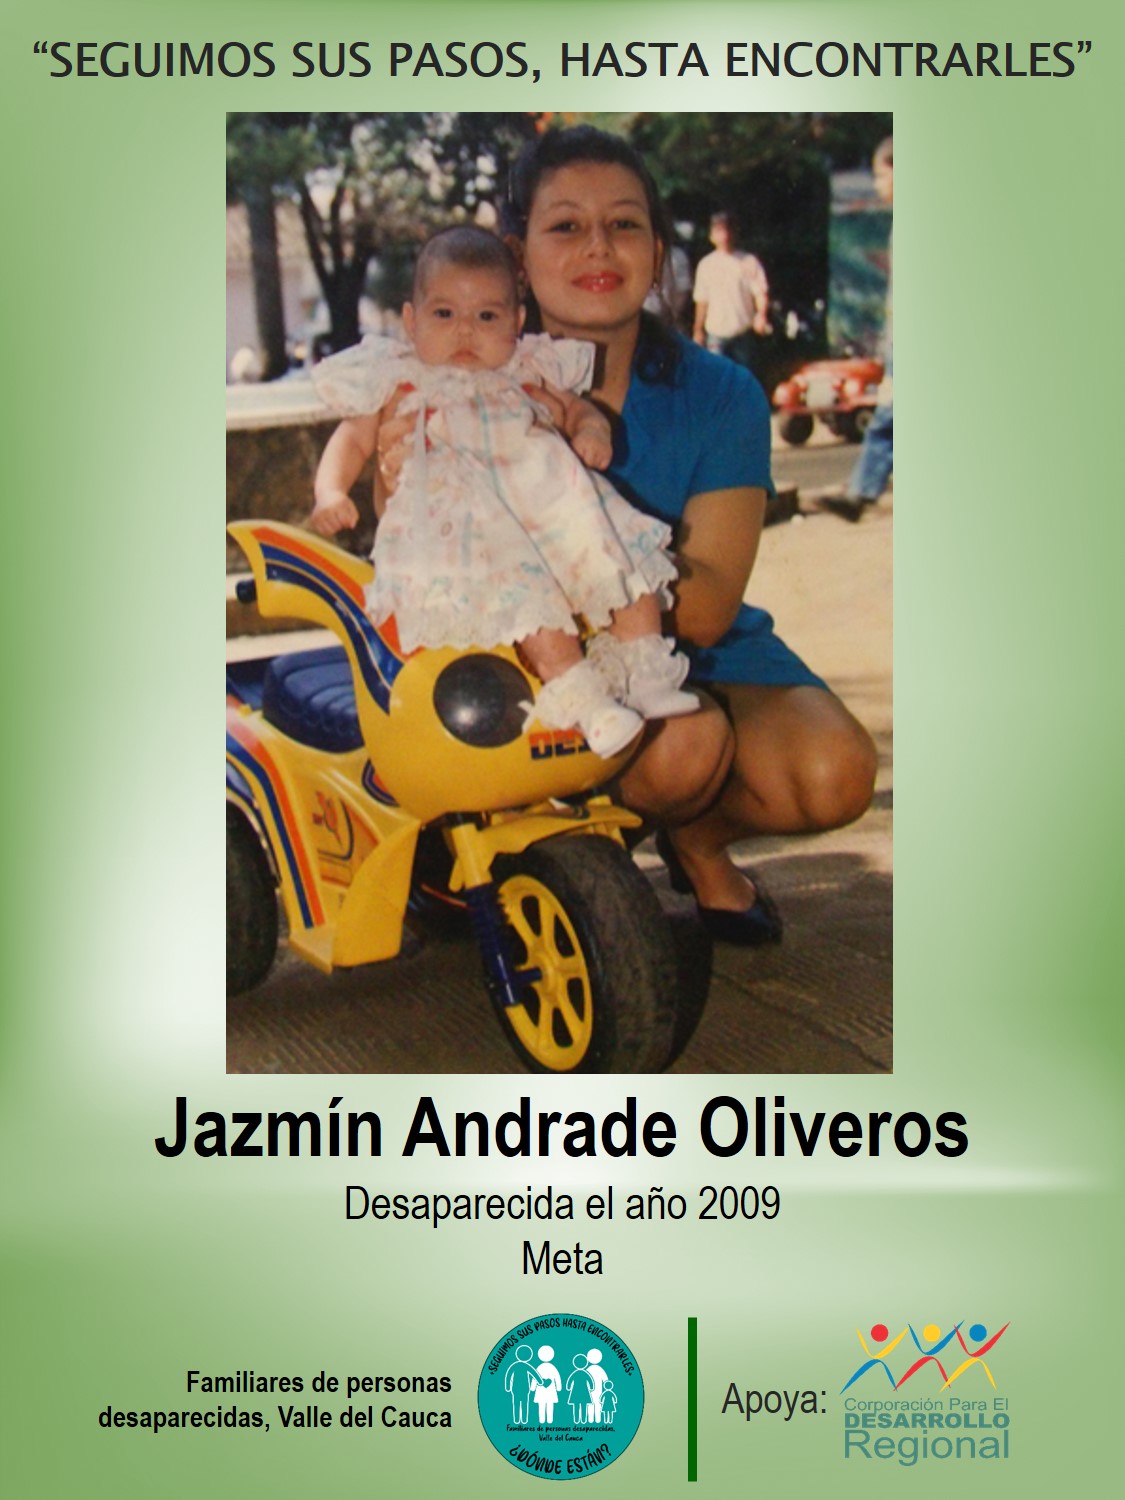 Jazmín Andrade Oliveros